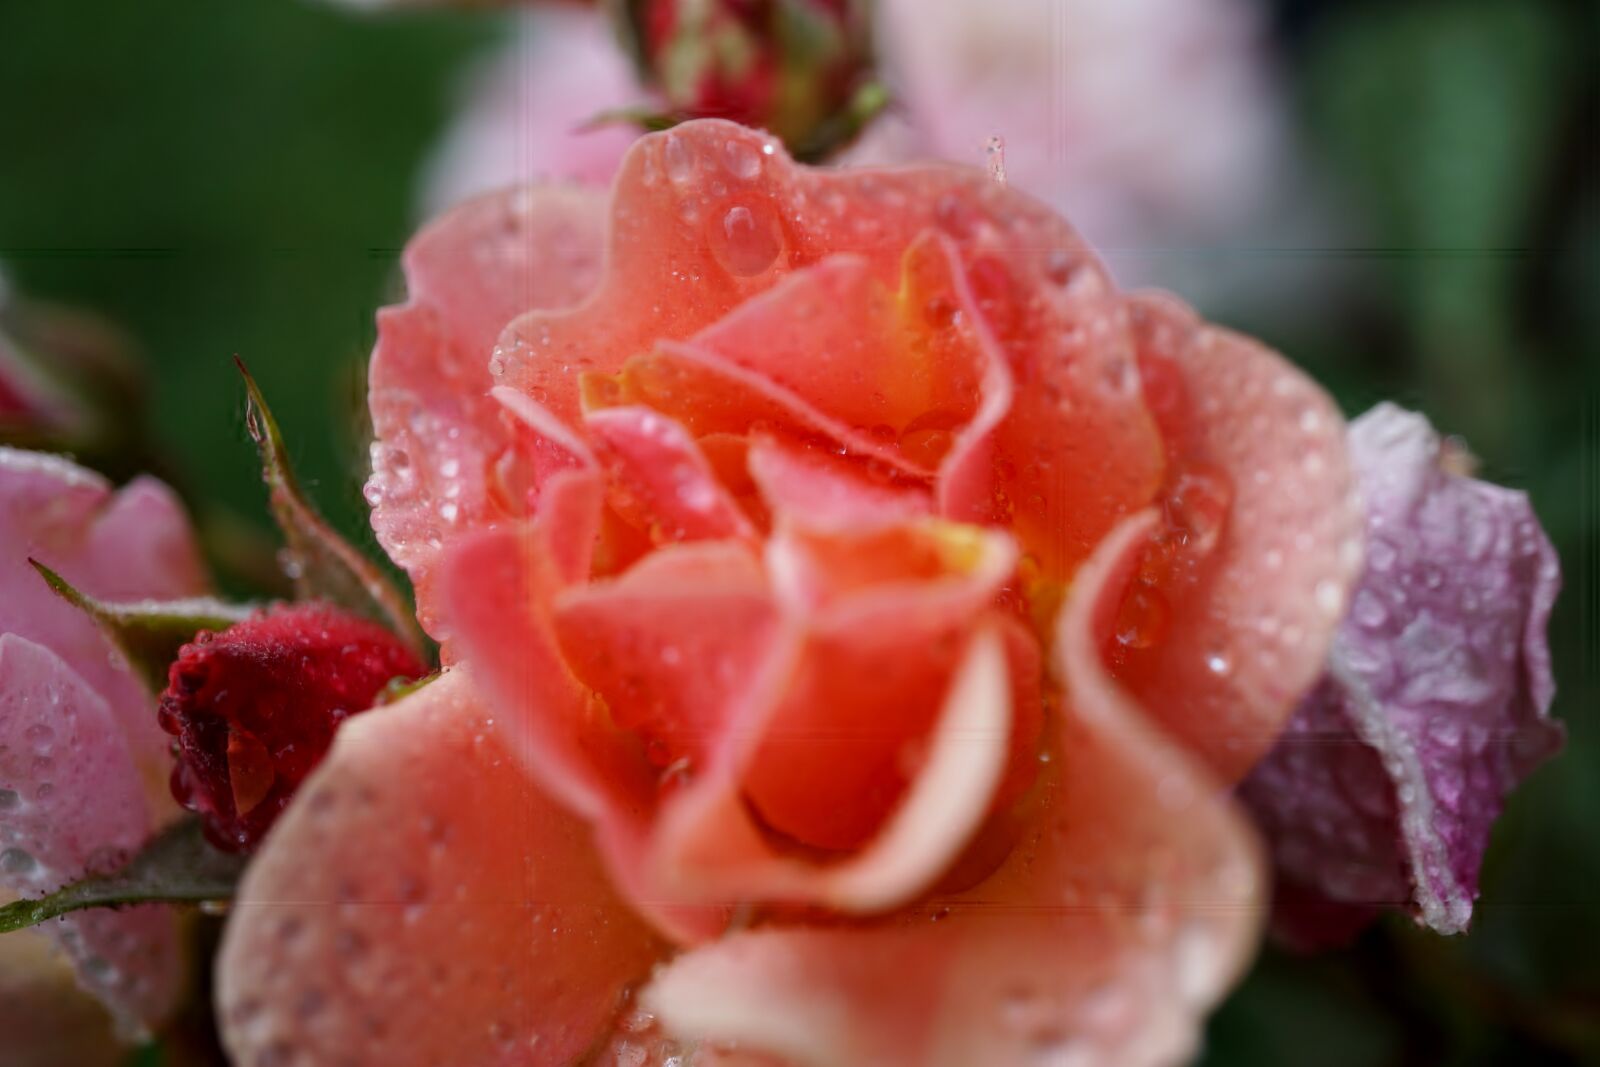 Sony a6000 + Sony E 30mm F3.5 Macro sample photo. Rose, garden, blossom photography